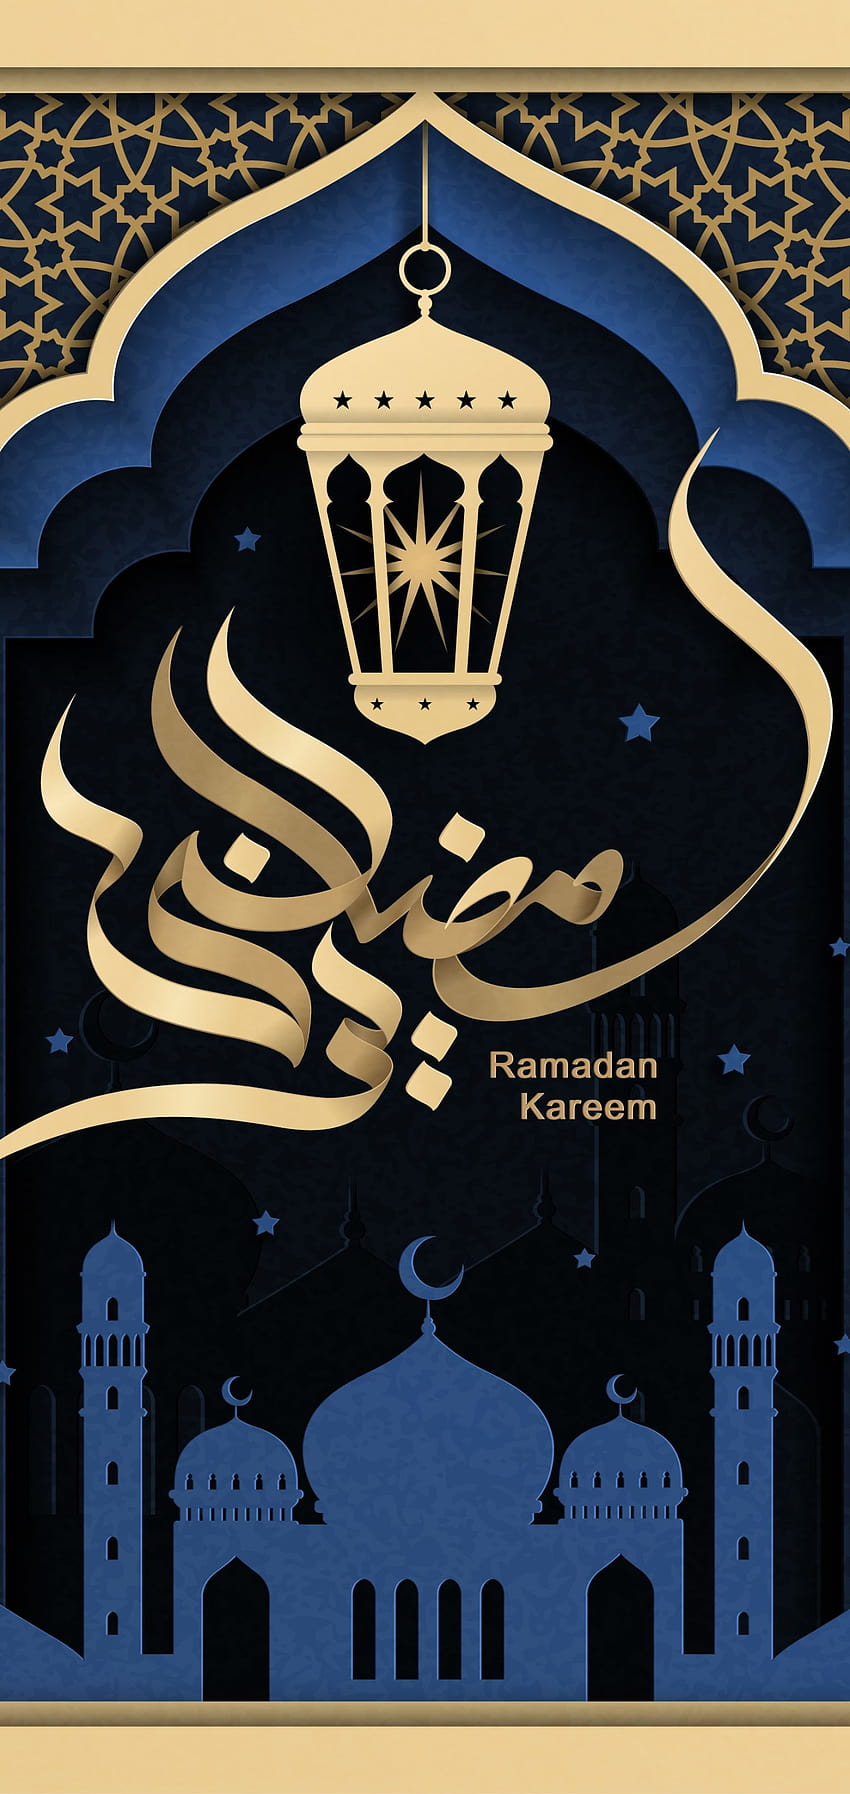 Ramadan Kareem Iphone, ramadan mubarak iphone HD phone wallpaper ...